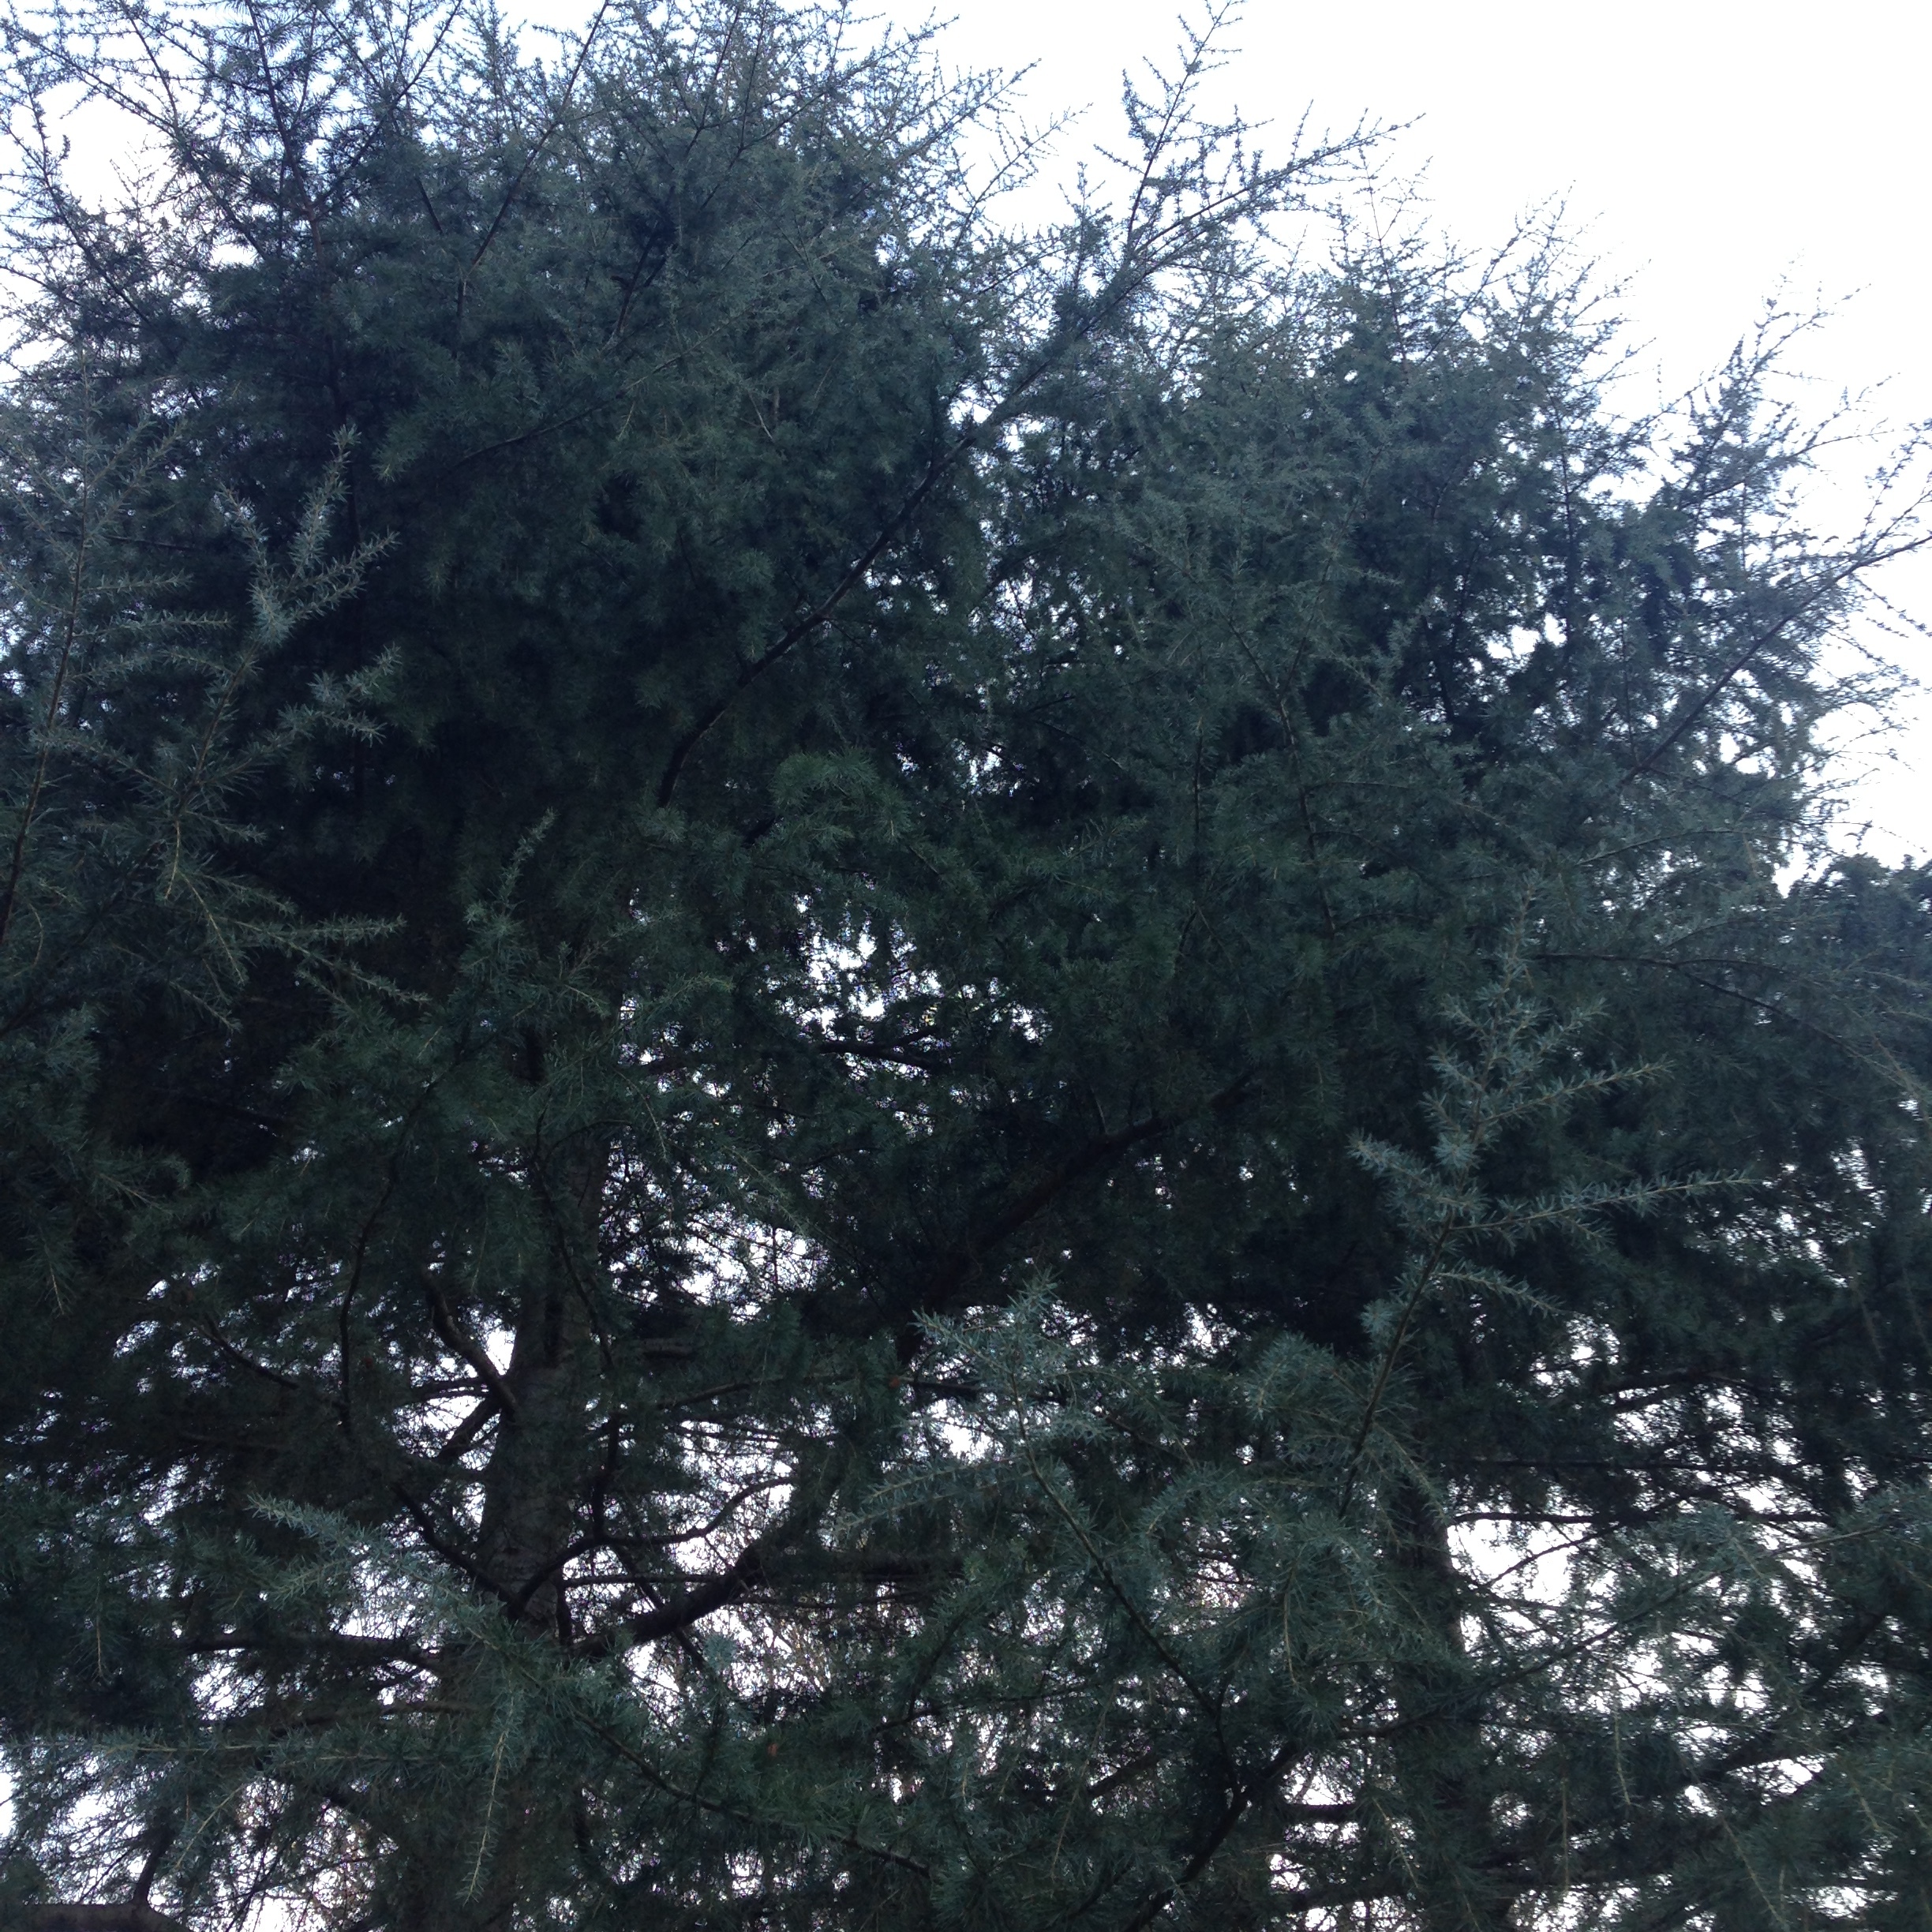 Blue Atlas Cedar (Cedrus atlantica)